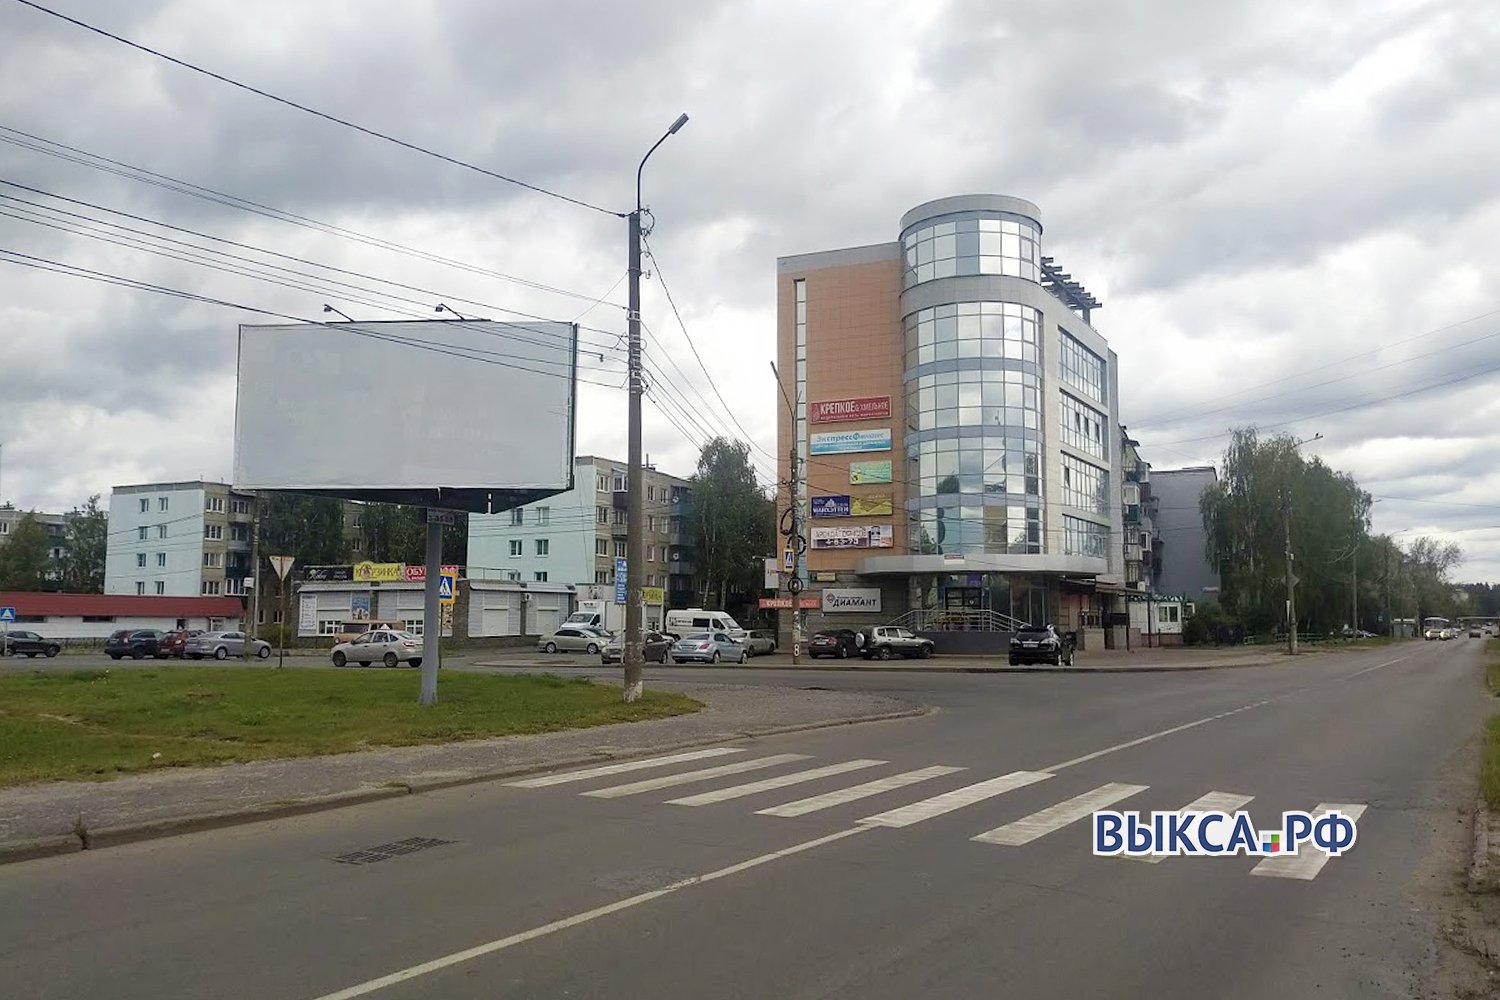 Новый переход появился на перекрёстке улиц Пушкина и Романова